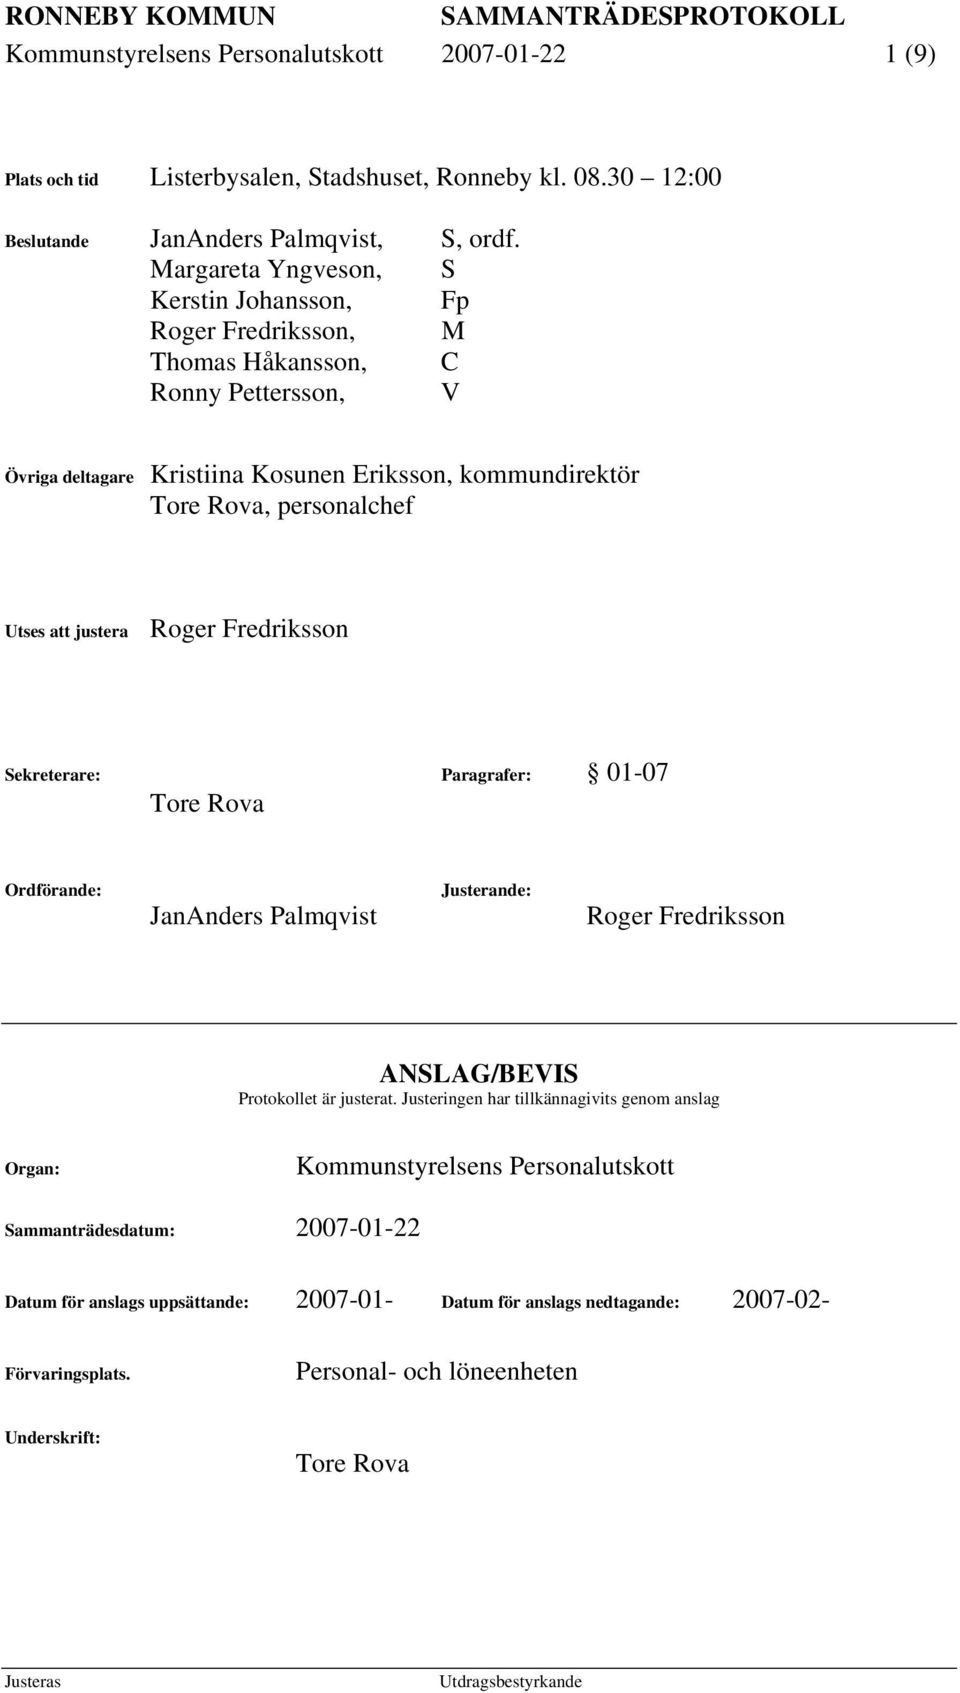 Utses att justera Roger Fredriksson Sekreterare: Paragrafer: 01-07 Tore Rova Ordförande: JanAnders Palmqvist Justerande: Roger Fredriksson ANSLAG/BEVIS Protokollet är justerat.